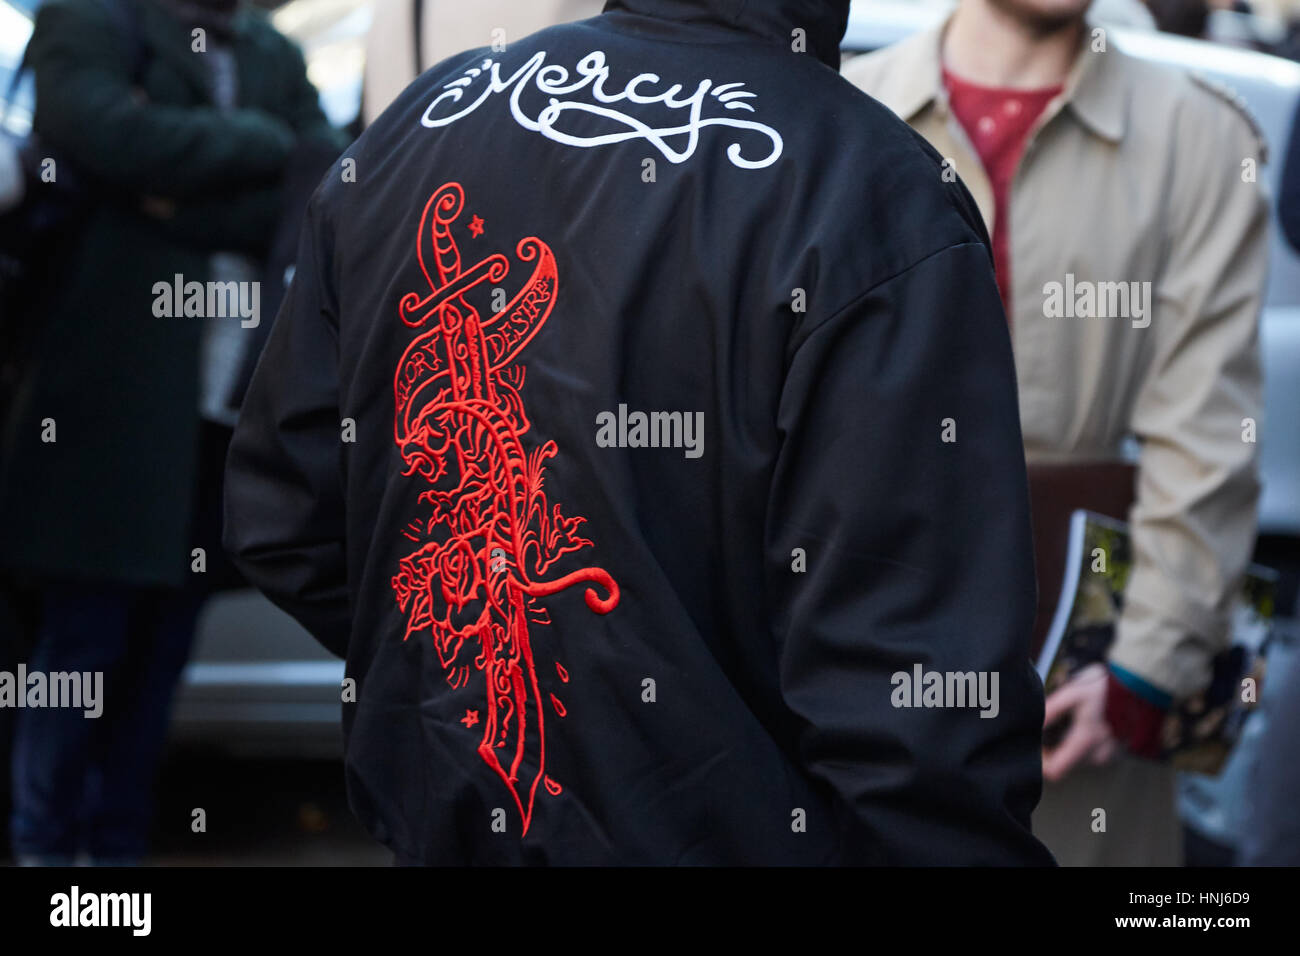 Mailand - Januar 16: Mann mit schwarzen Jacke mit Gnade schreiben und Schwert Design vor Cedric Charlier Modenschau, Milan Fashion Week Streetstyle auf Stockfoto